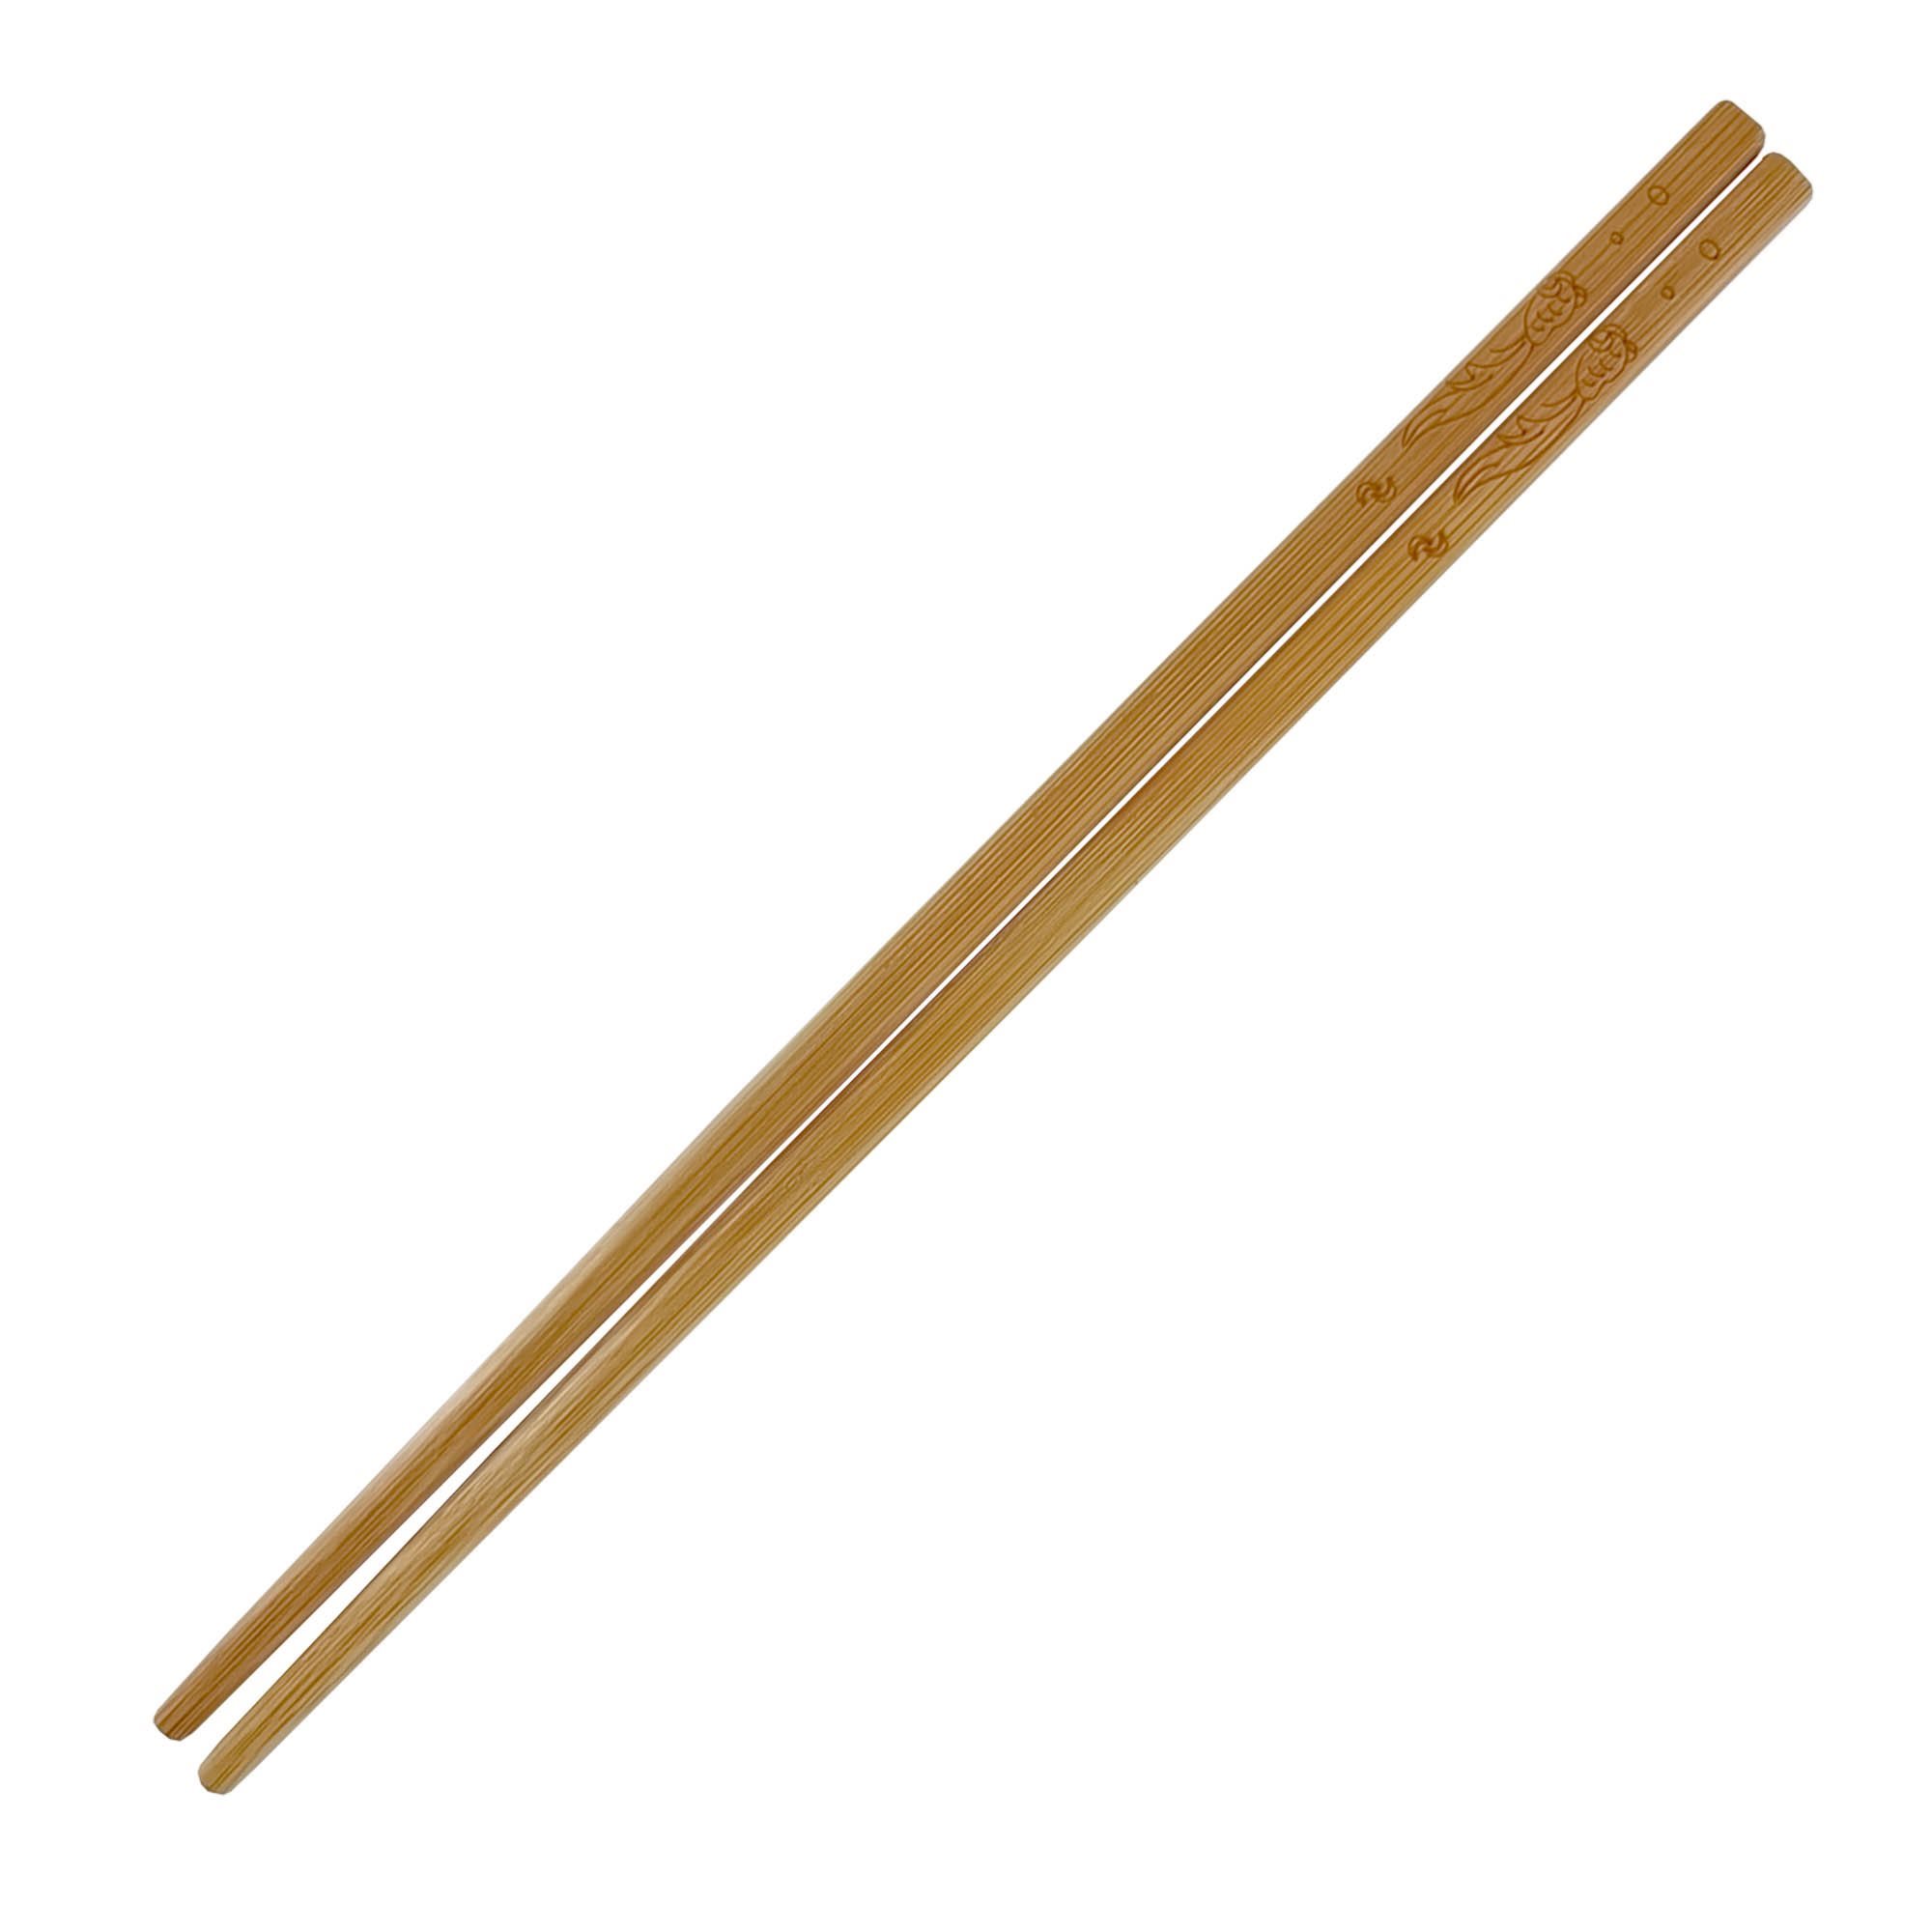 Palillos japoneses como jugar / como jugar palillos / palillos chinos /  juegos de mesa /juegos 